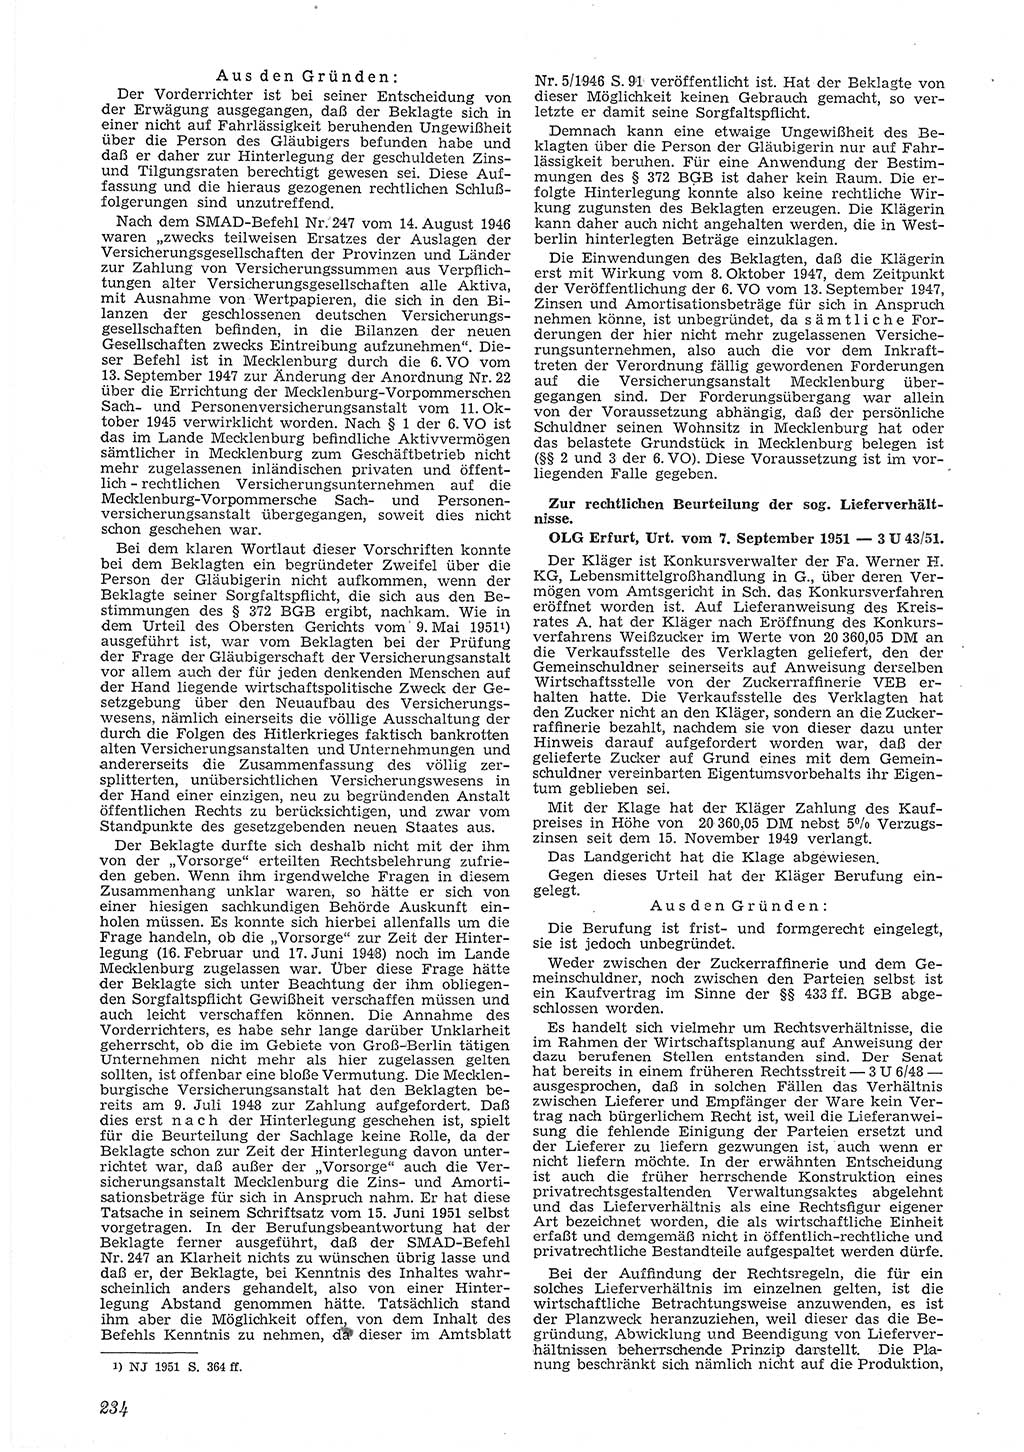 Neue Justiz (NJ), Zeitschrift für Recht und Rechtswissenschaft [Deutsche Demokratische Republik (DDR)], 6. Jahrgang 1952, Seite 234 (NJ DDR 1952, S. 234)